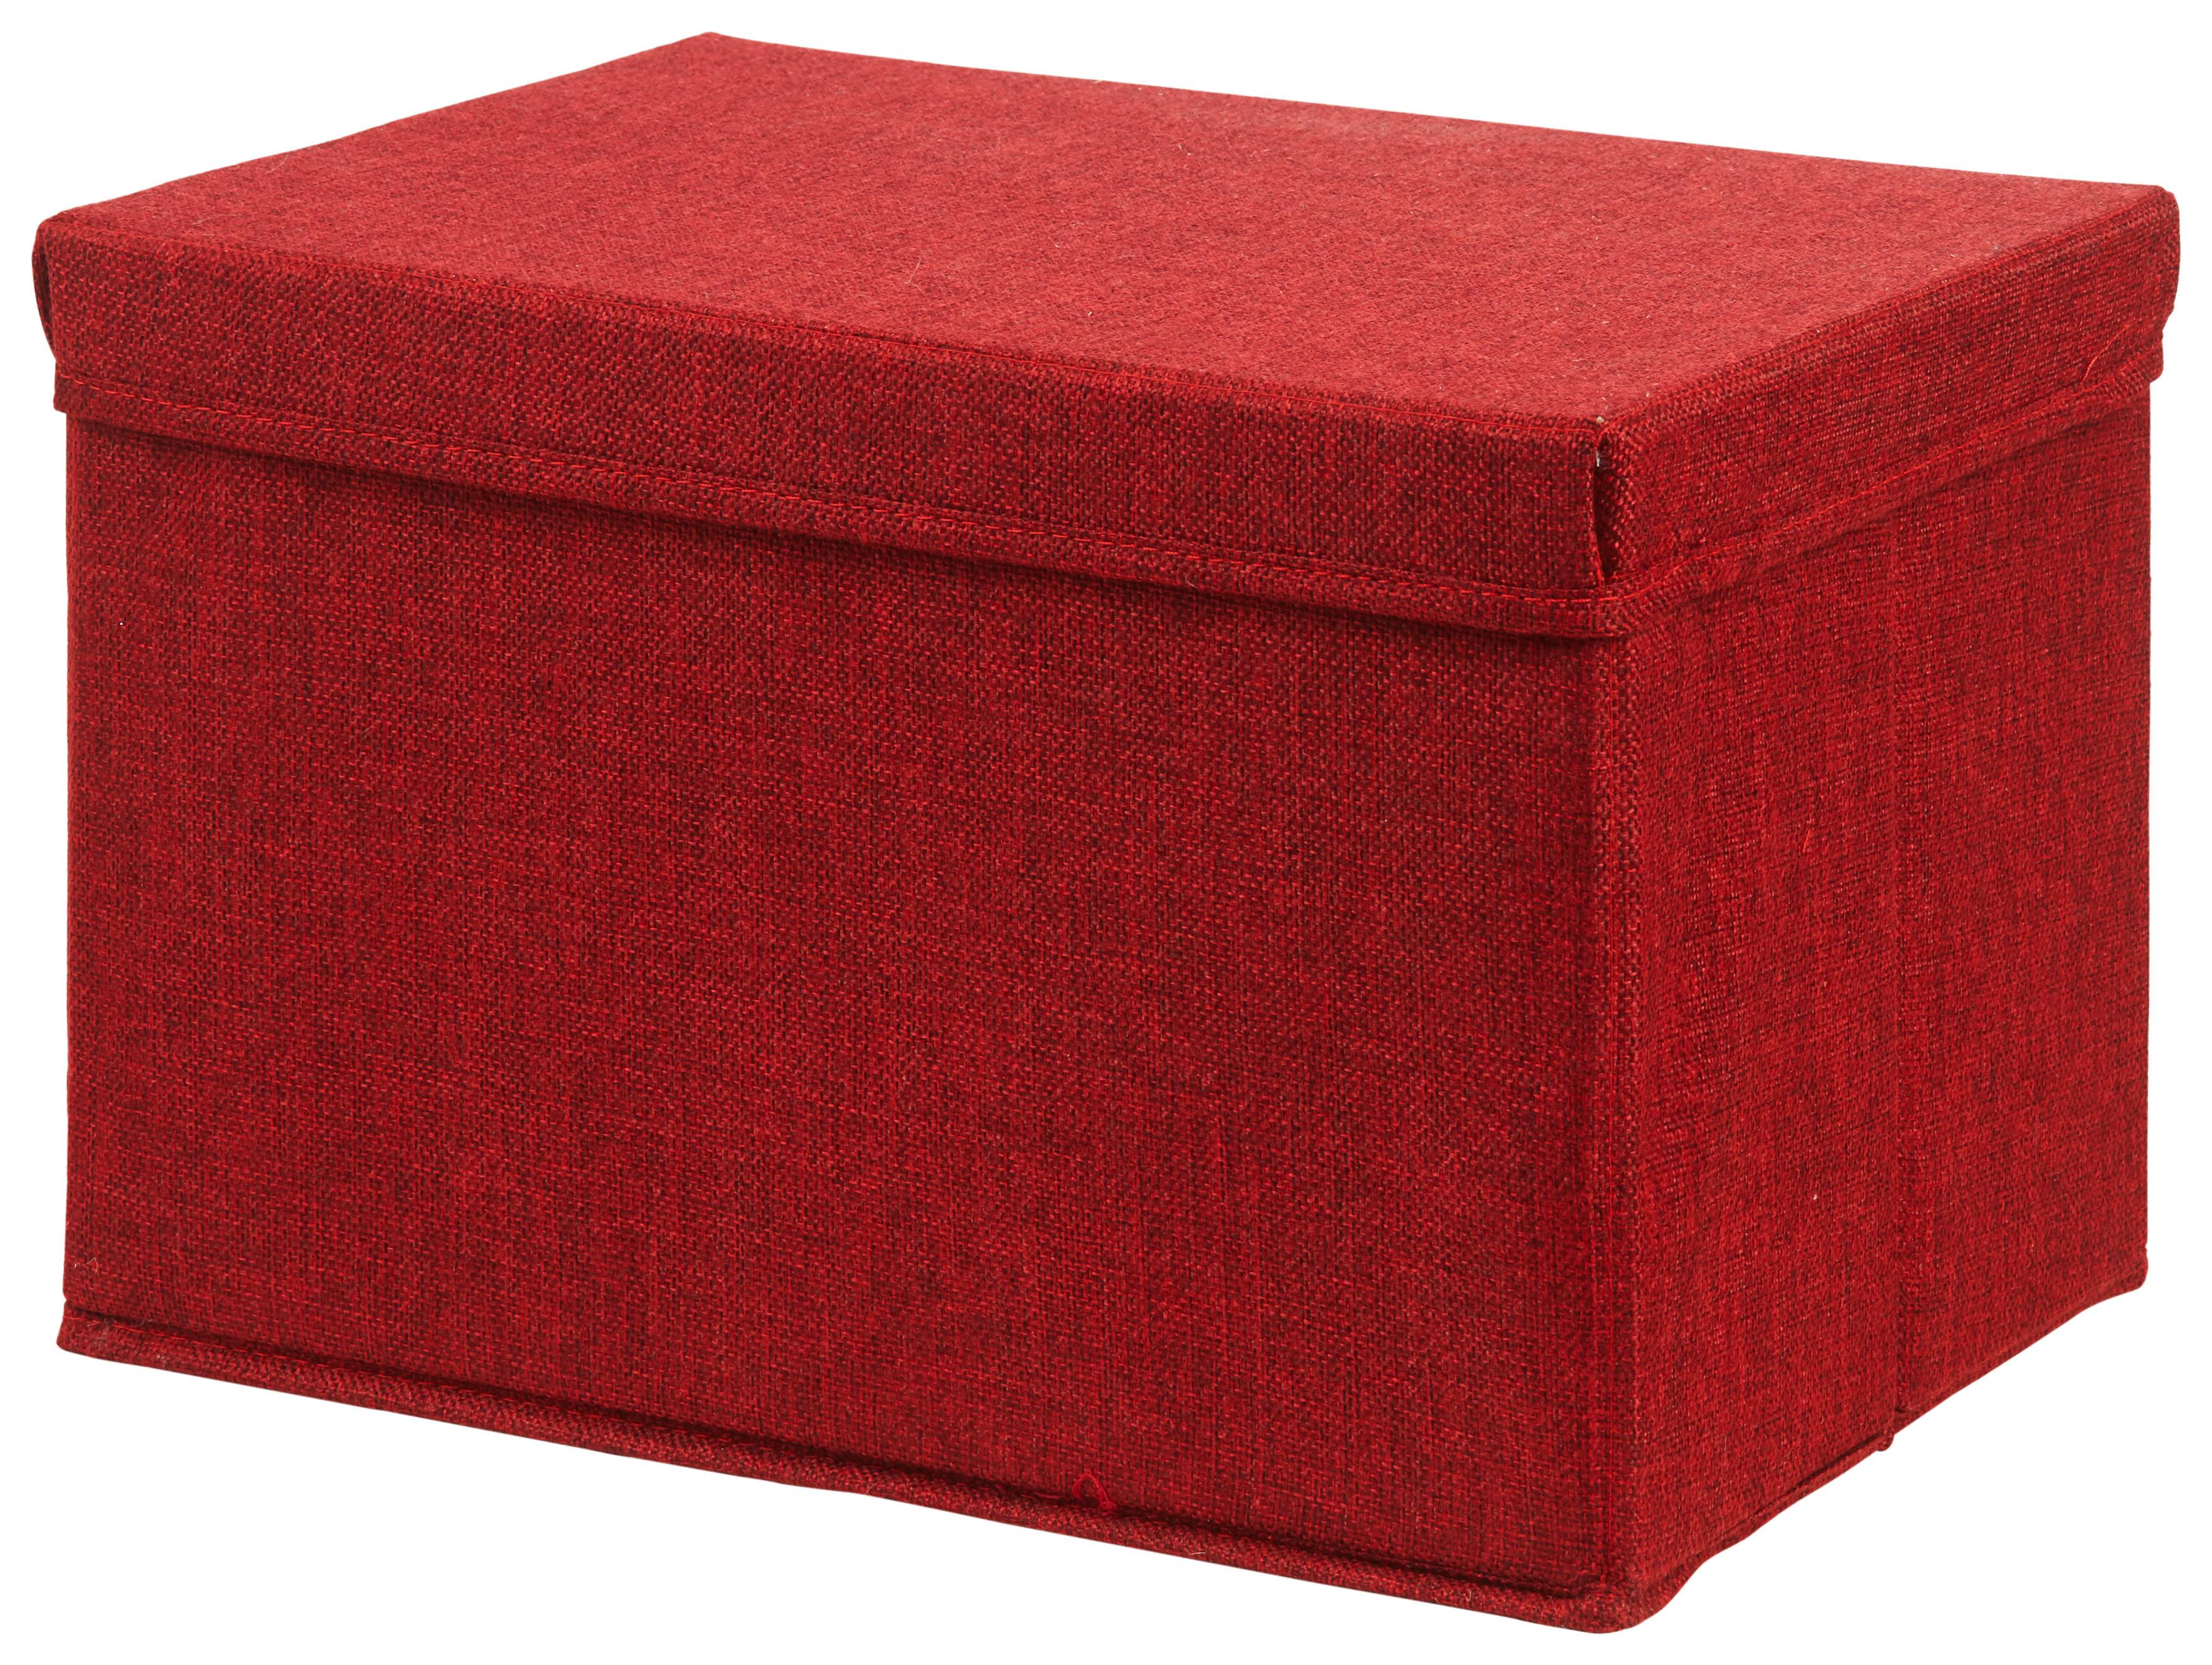 Skladací Box Cindy - Ca. 23l -Ext- - červená, Moderný, kartón/textil (38/26/24cm) - Premium Living